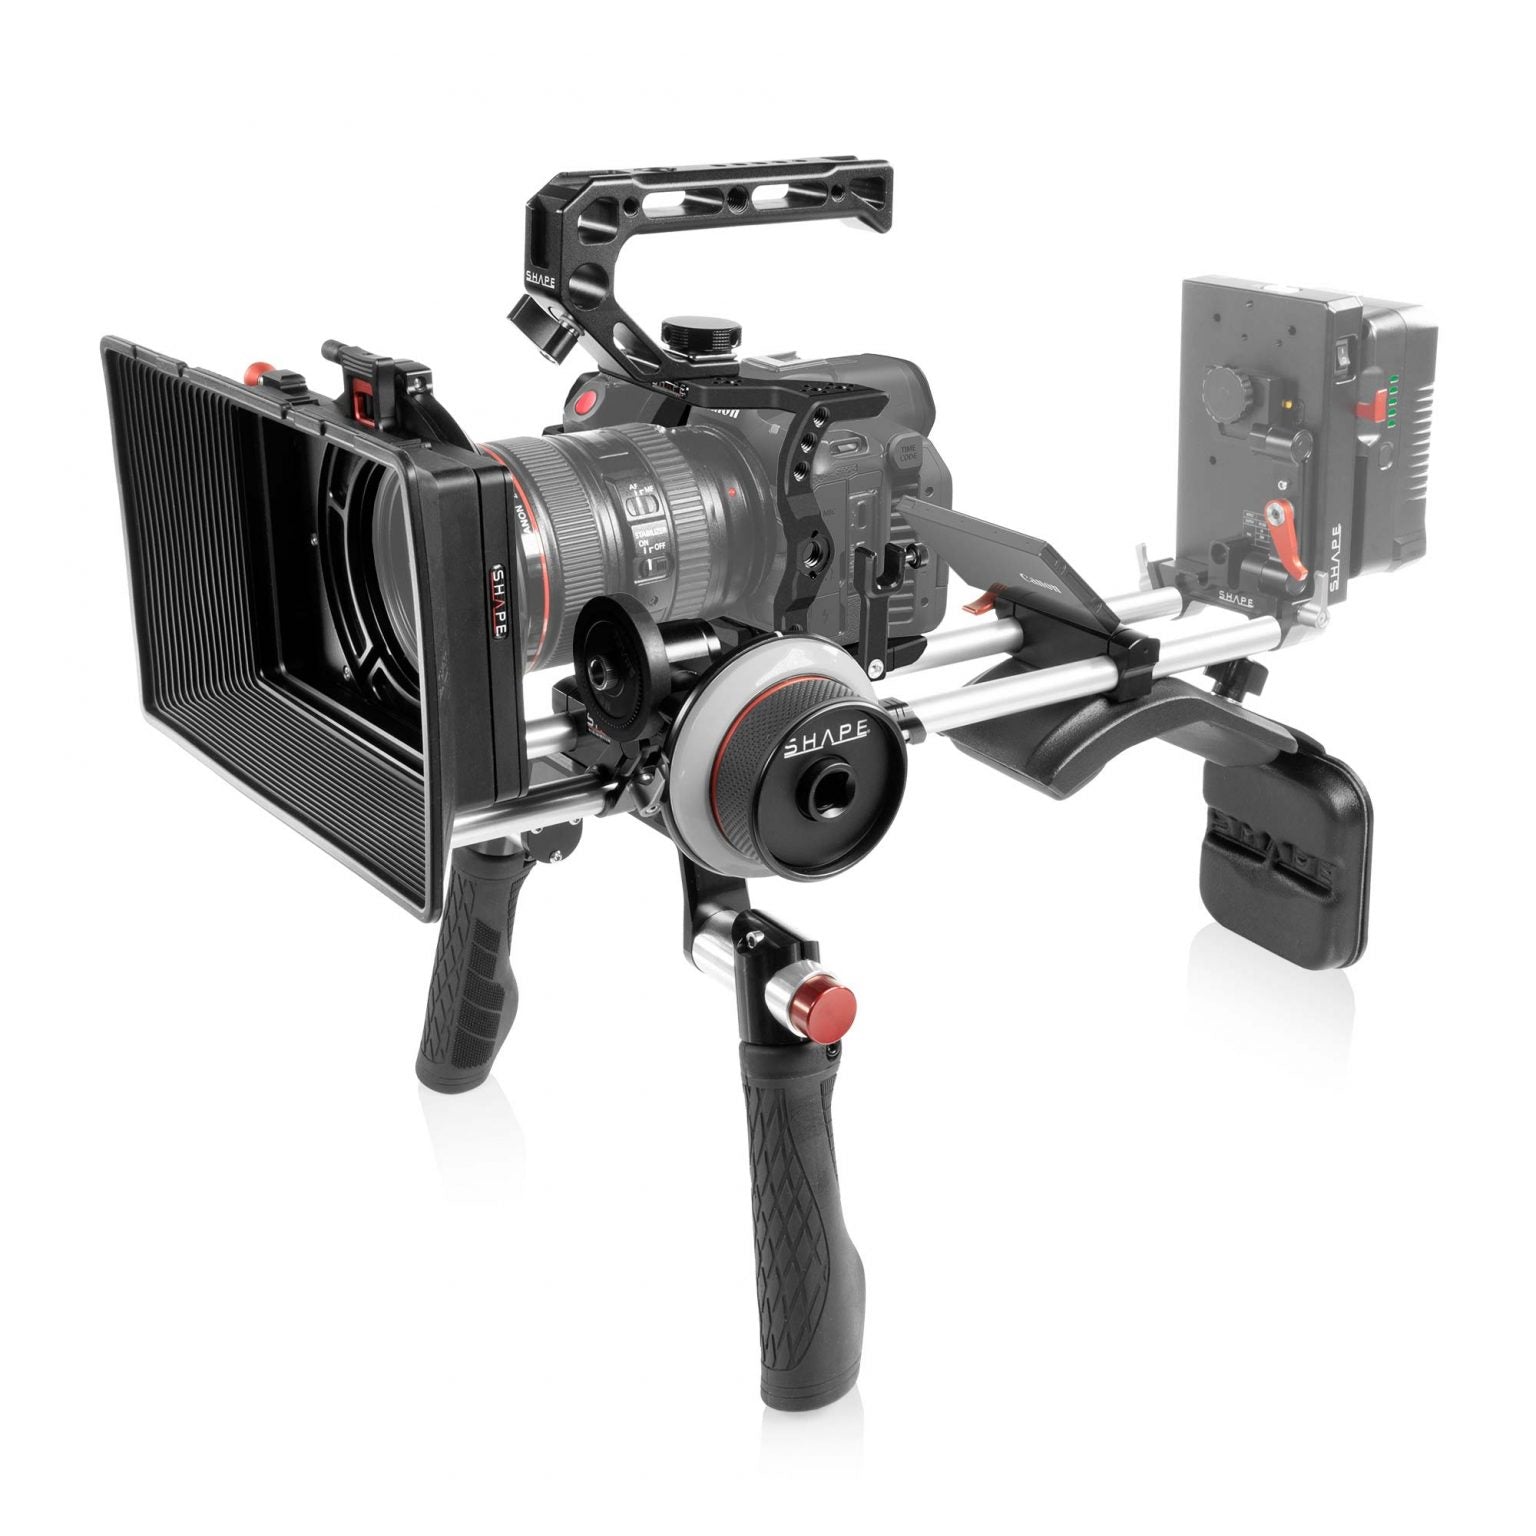 SHAPE Shoulder Mount Kit for Canon R5C/R5/R6 - SHAPE wlb